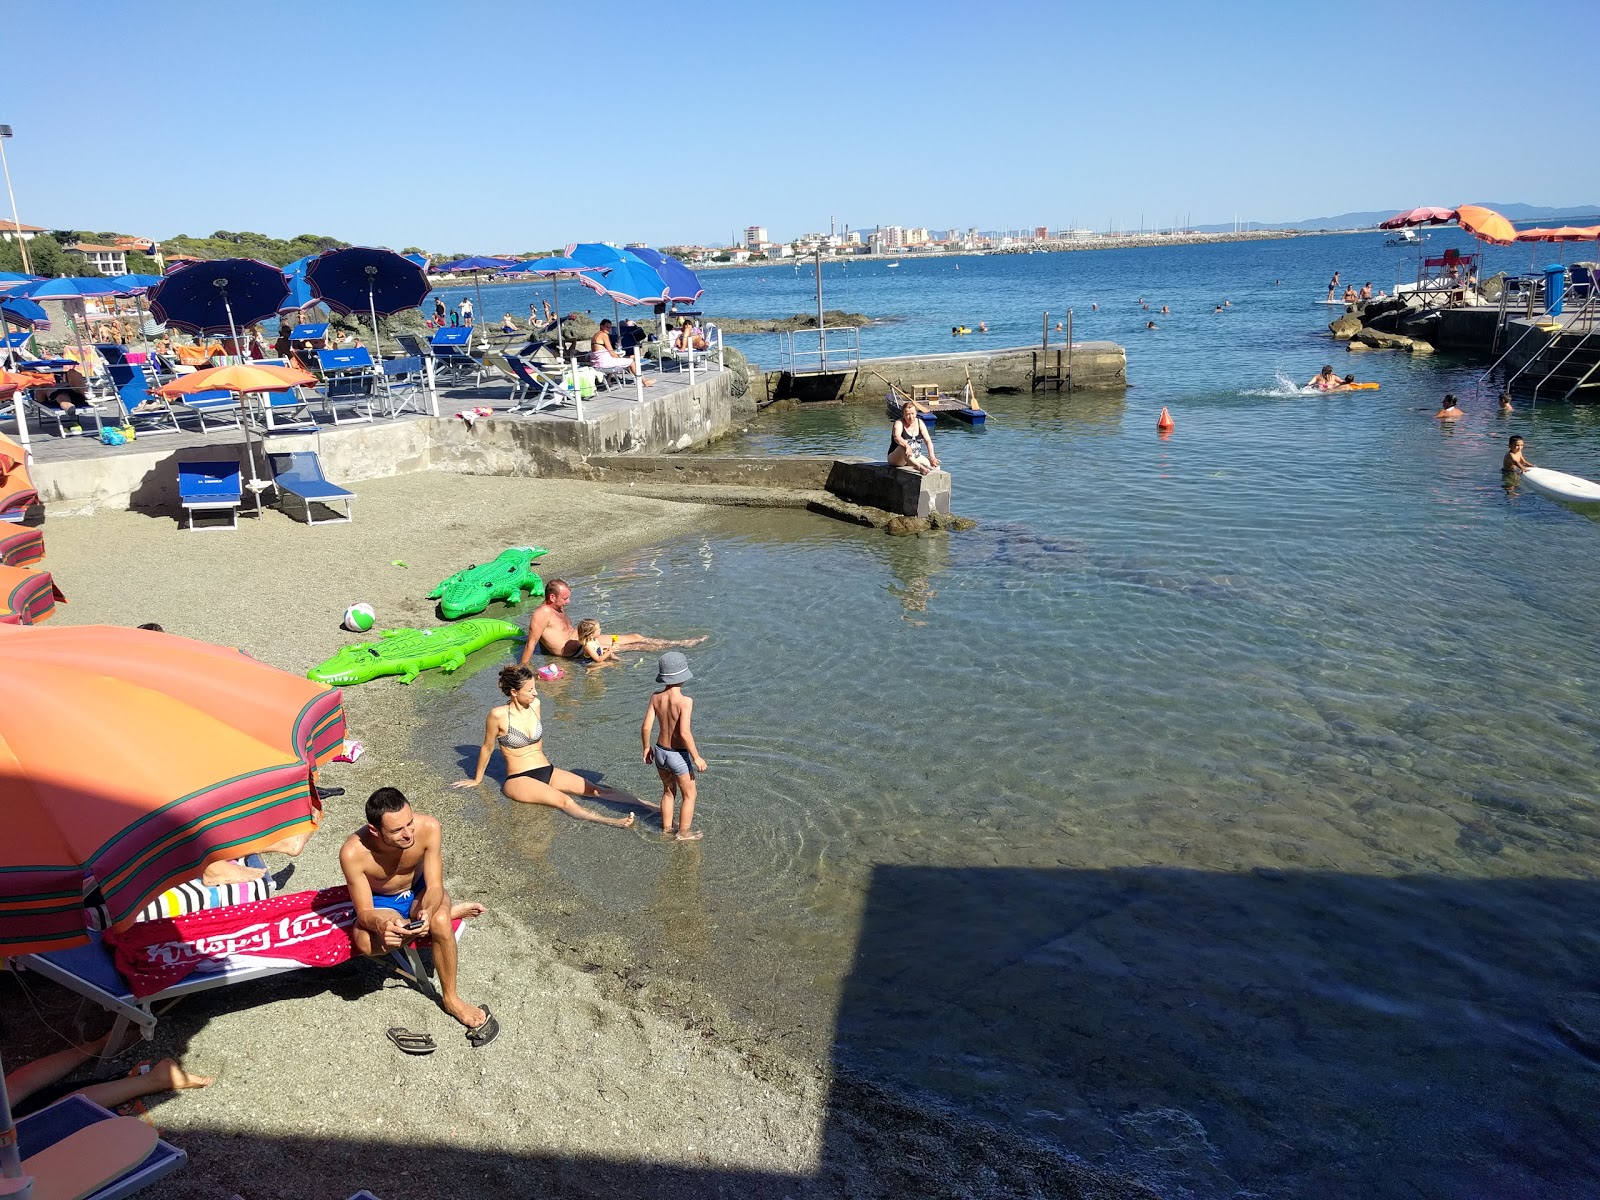 Photo of Spiaggetta del "ginecologo" beach resort area